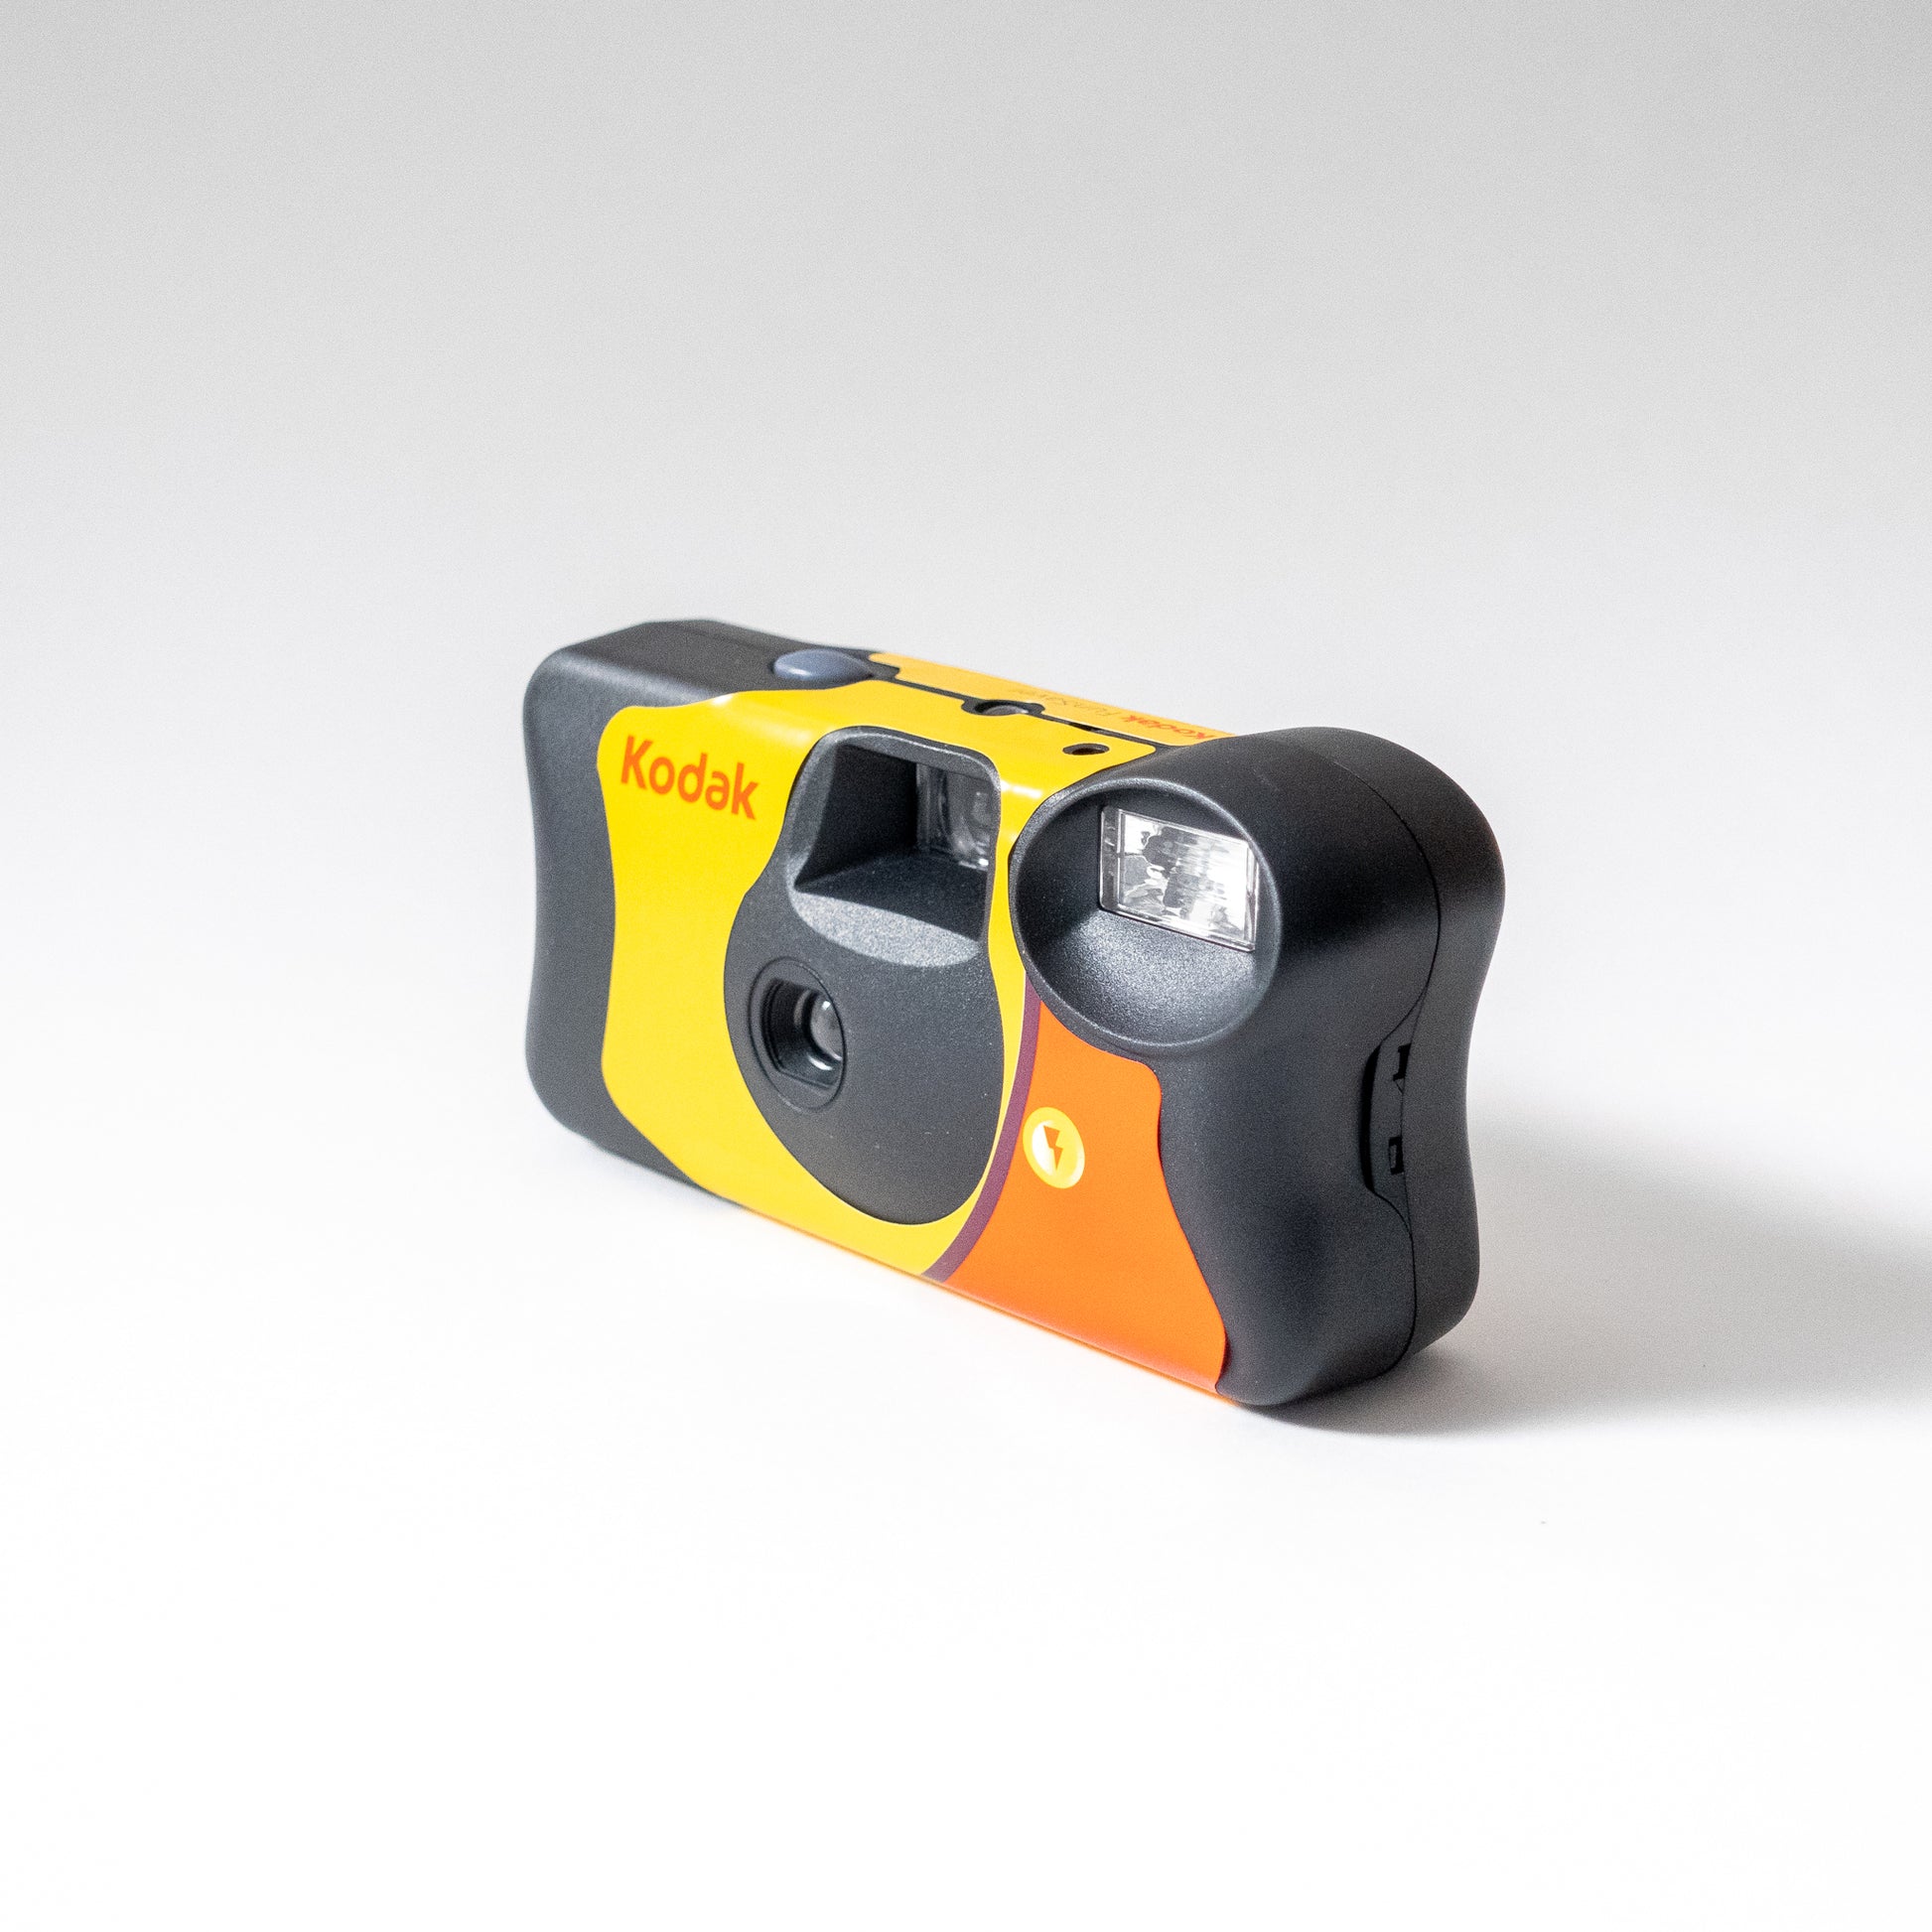 Kodak-Cámara Usar y Tirar Fun Saver 800-27 con Flash - Distribuciones RJB  Audionorte